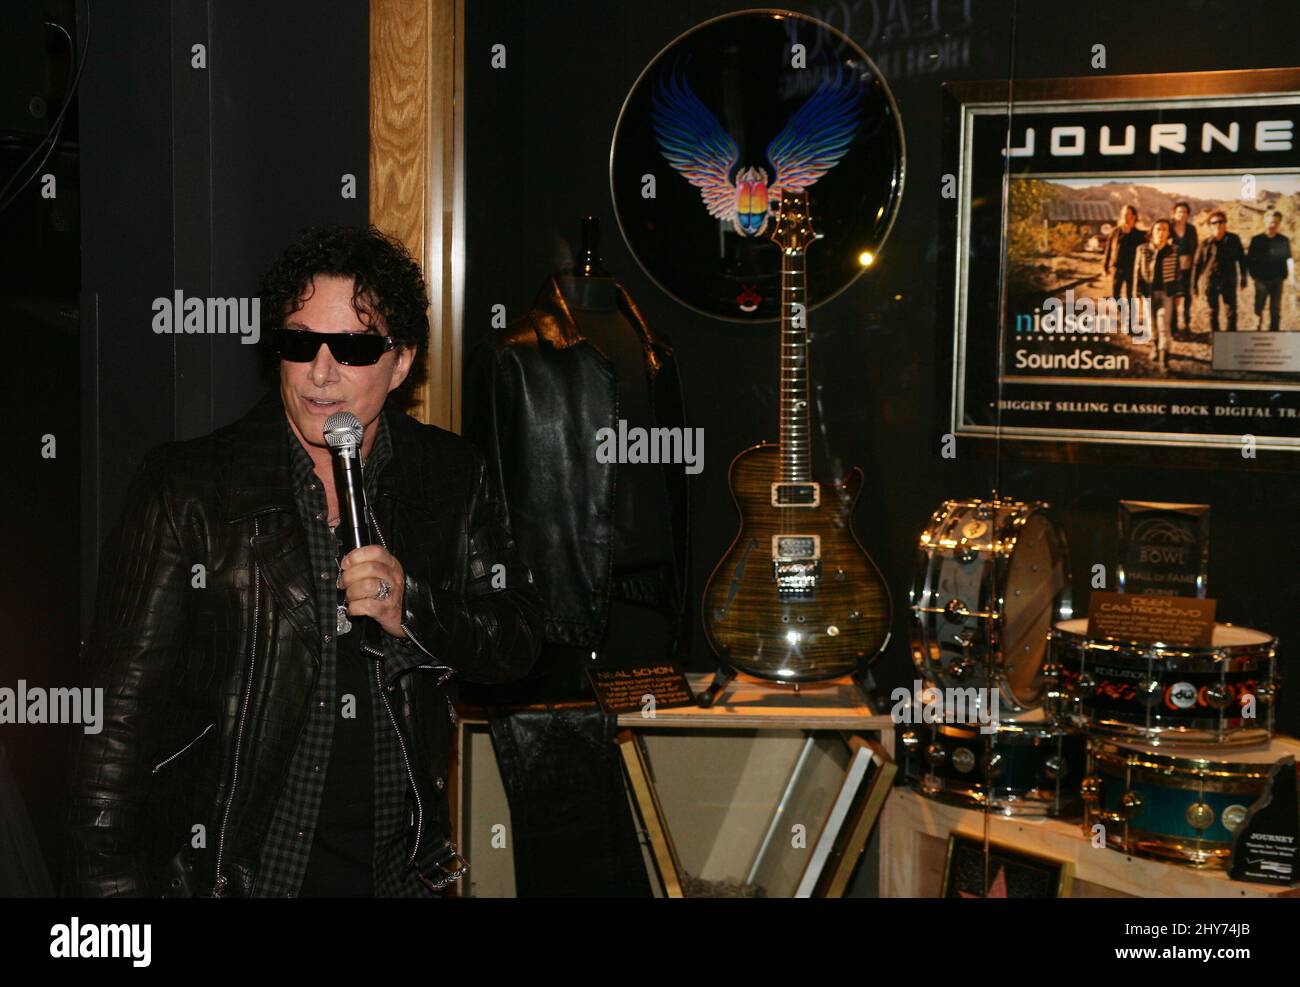 Neal Schon come Journey e Neal Schon svelano i casi di cimeli all'Hard Rock Hotel & Casino di Las Vegas. Foto Stock